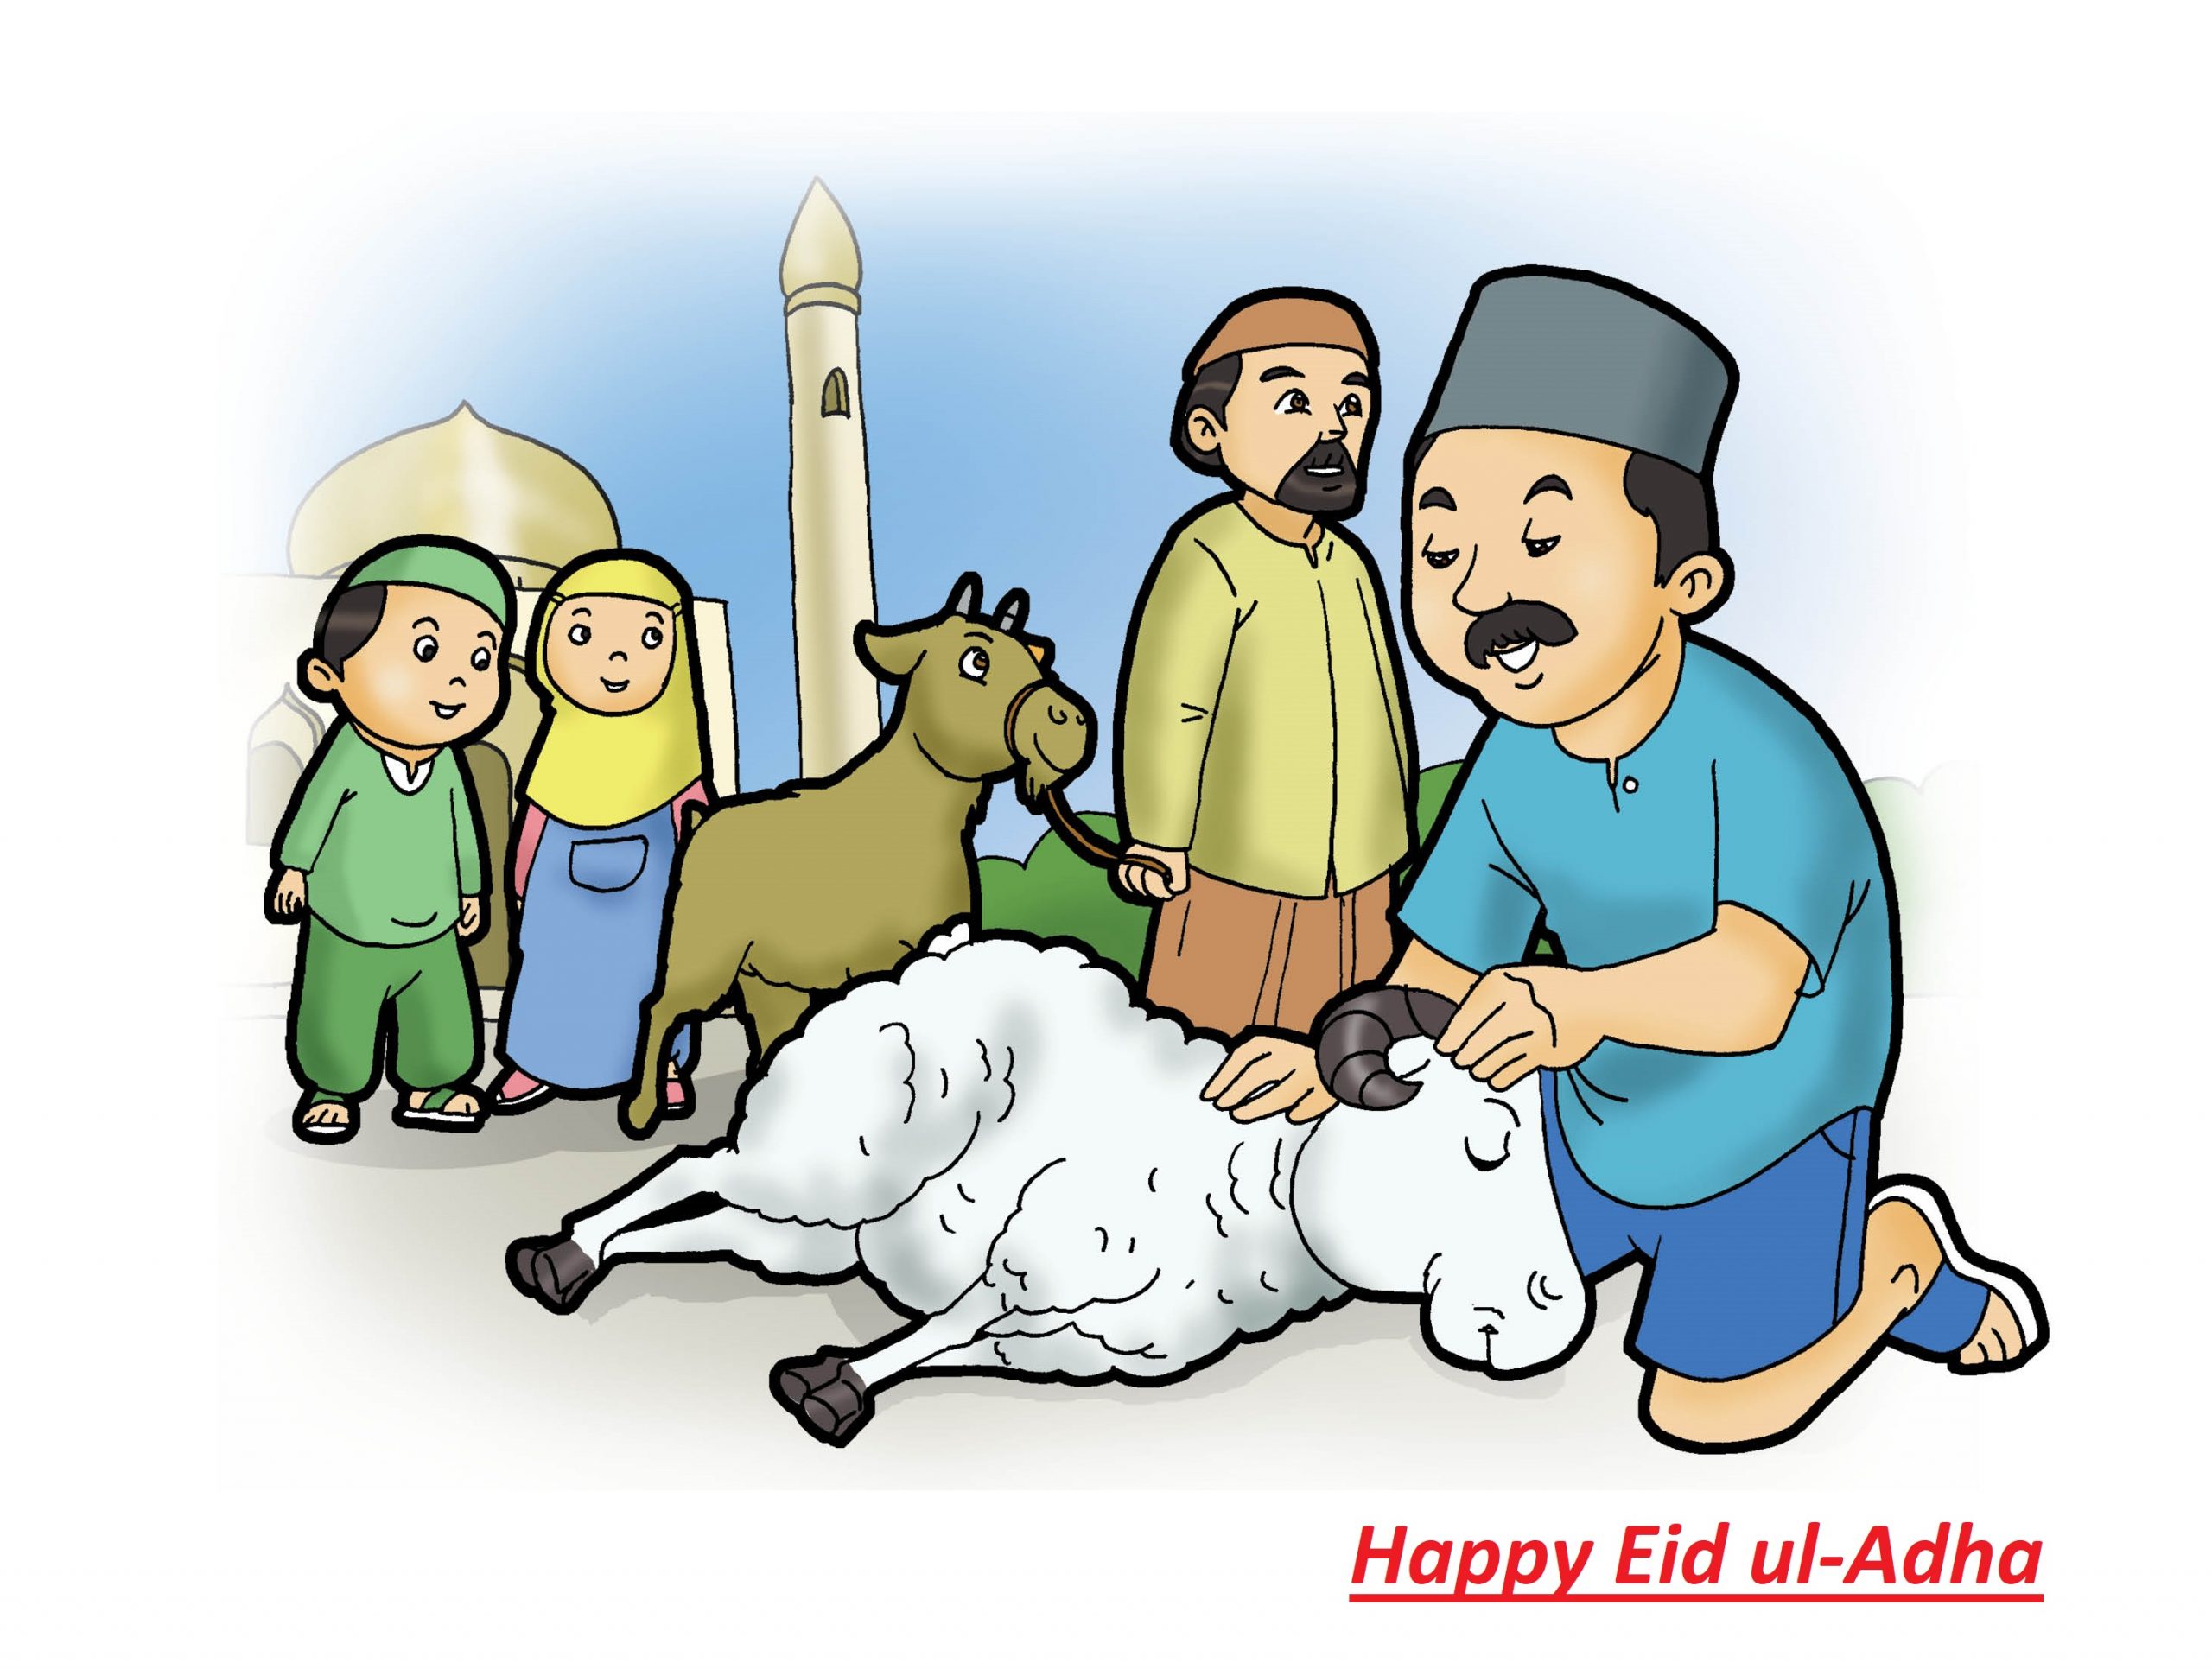 عکس های تبریک عید قربان به انگلیسی